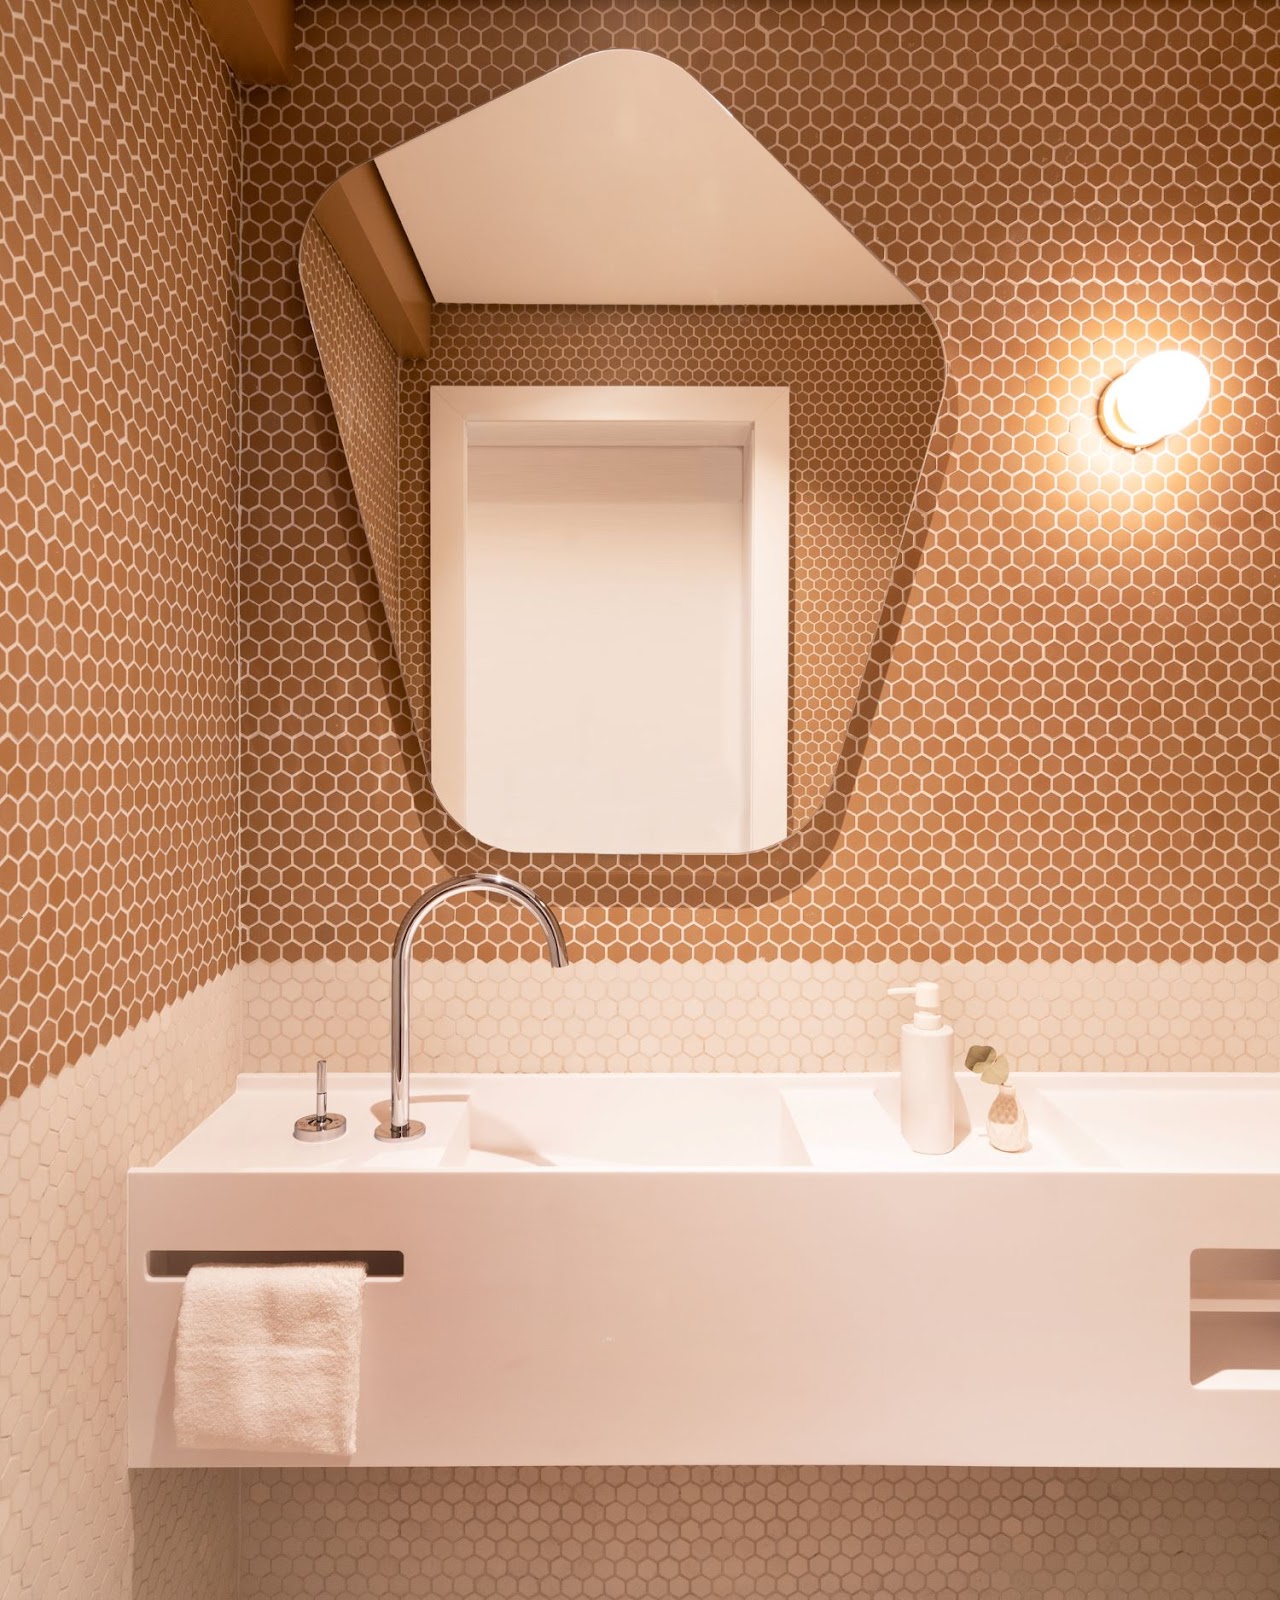 Banheiro com bancada e pia branca, parede revestida com pastilha em formato hexagonal rose e nude e espelho orgânico na parede.